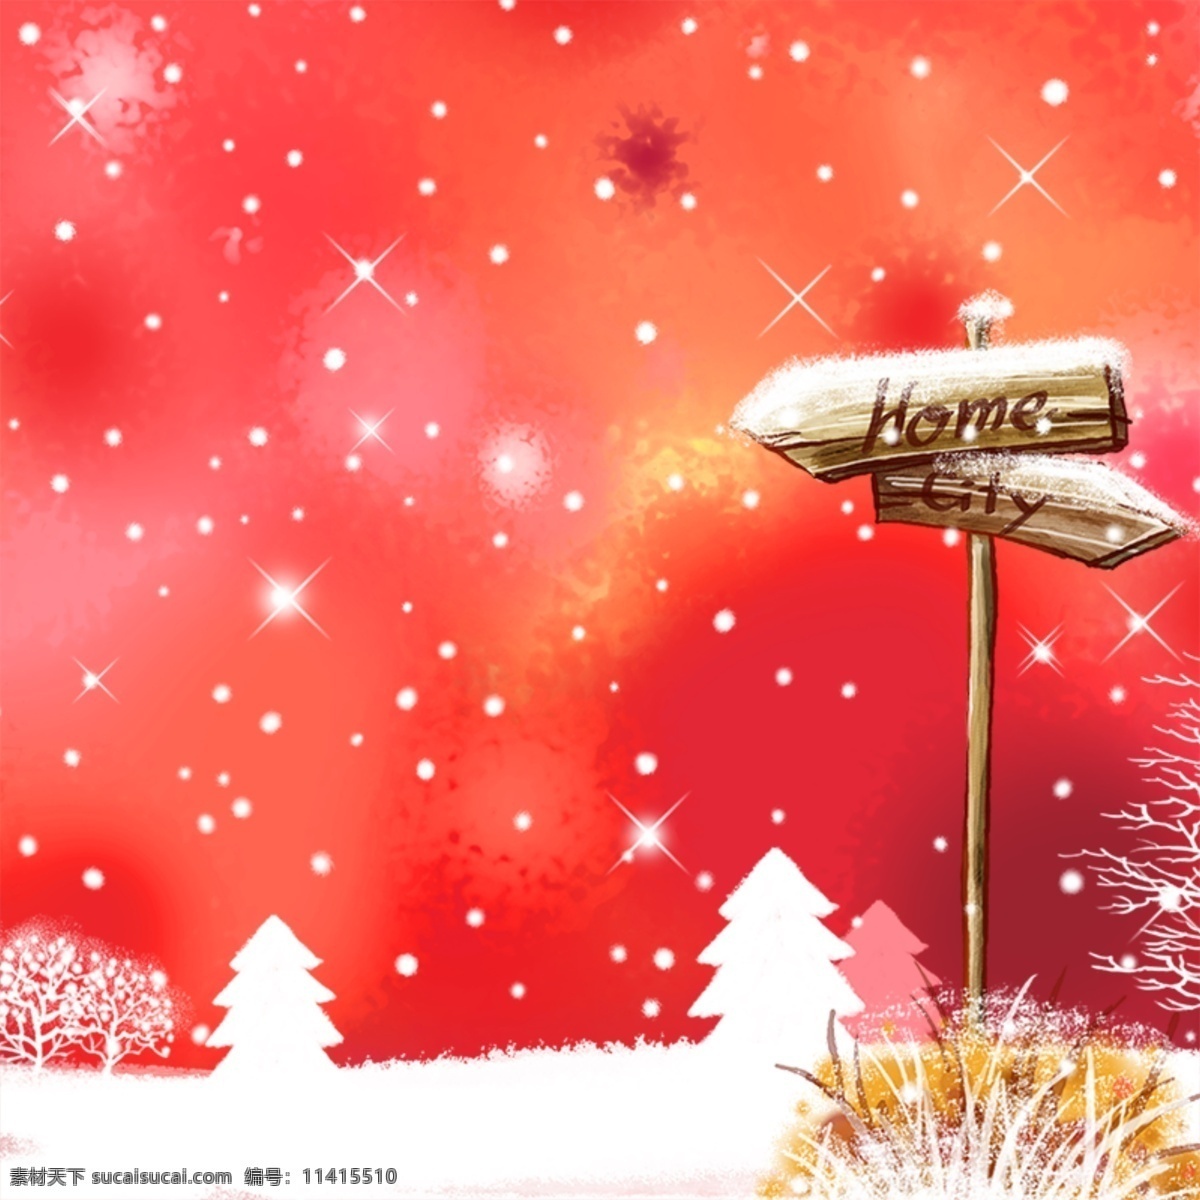 手绘冬季背景 星星 冬季背景 冬季插画 冬天 广告设计模板 源文件 冬季 氛围 模板下载 冬季氛围 写意背景 红色